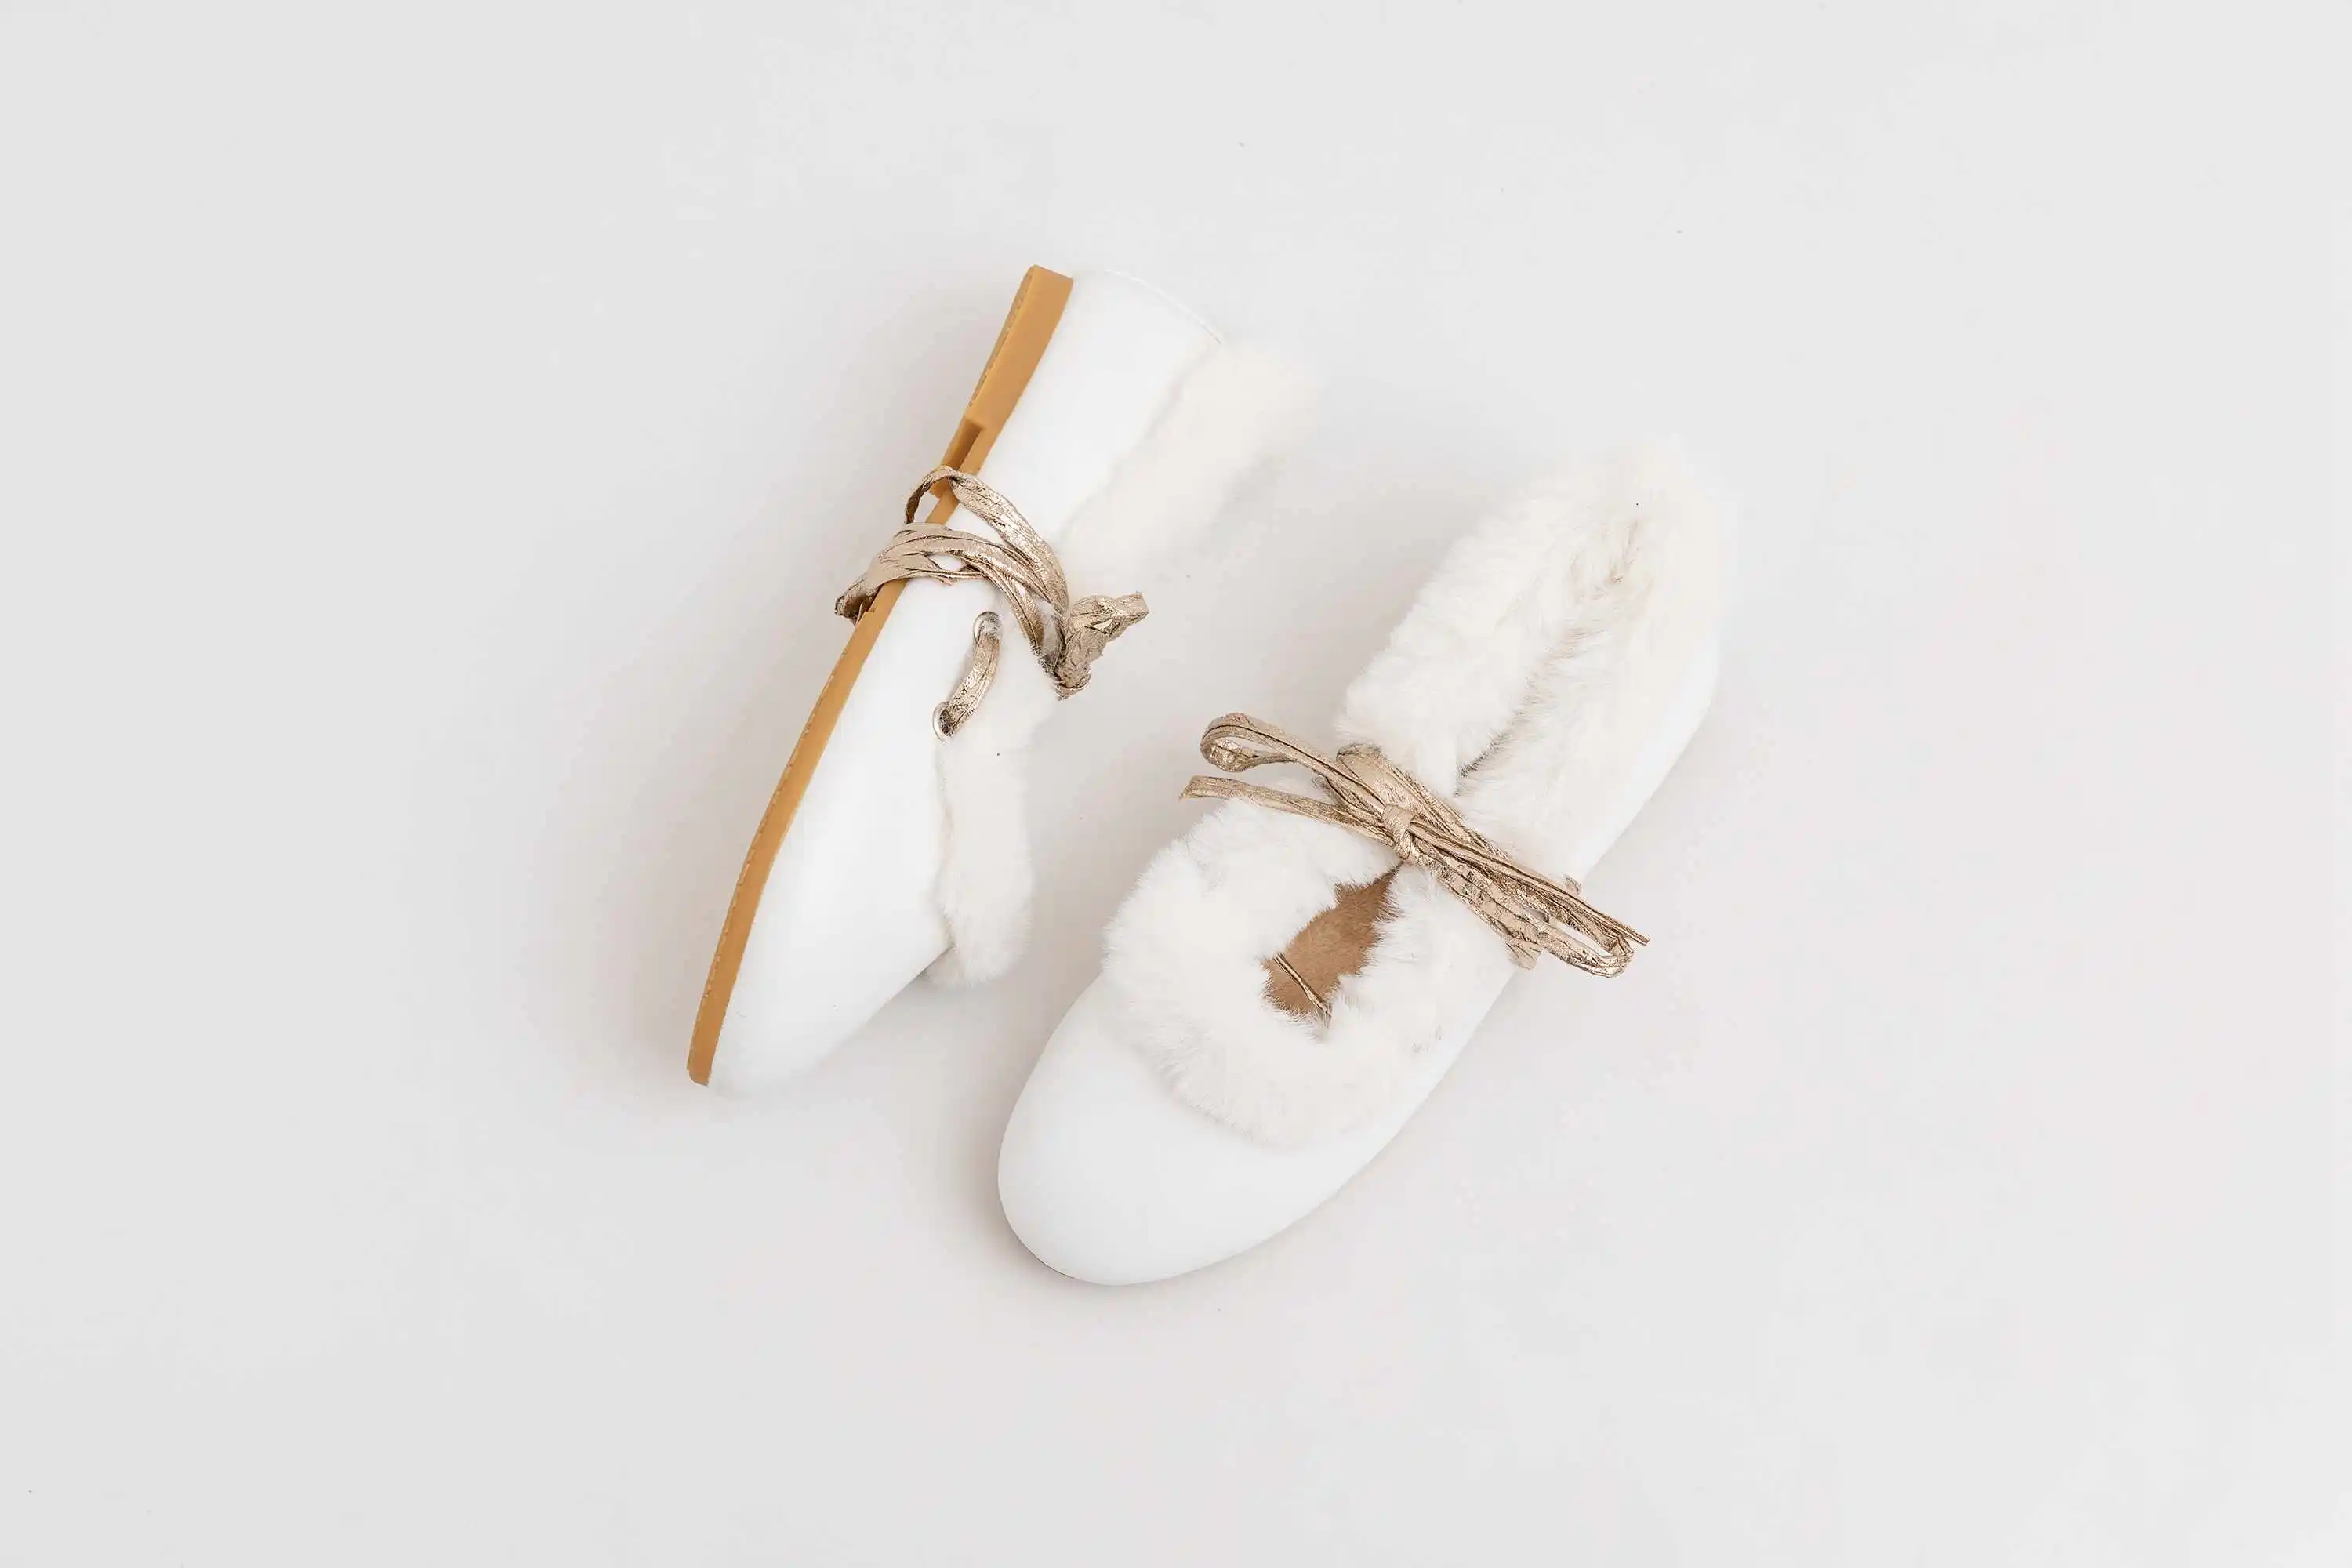 Krazing Pot/модная обувь из коровьей кожи на плоской подошве с овечьим мехом; обувь для отдыха с круглым носком; теплые зимние женские балетки на шнуровке; Танцевальная обувь; L25